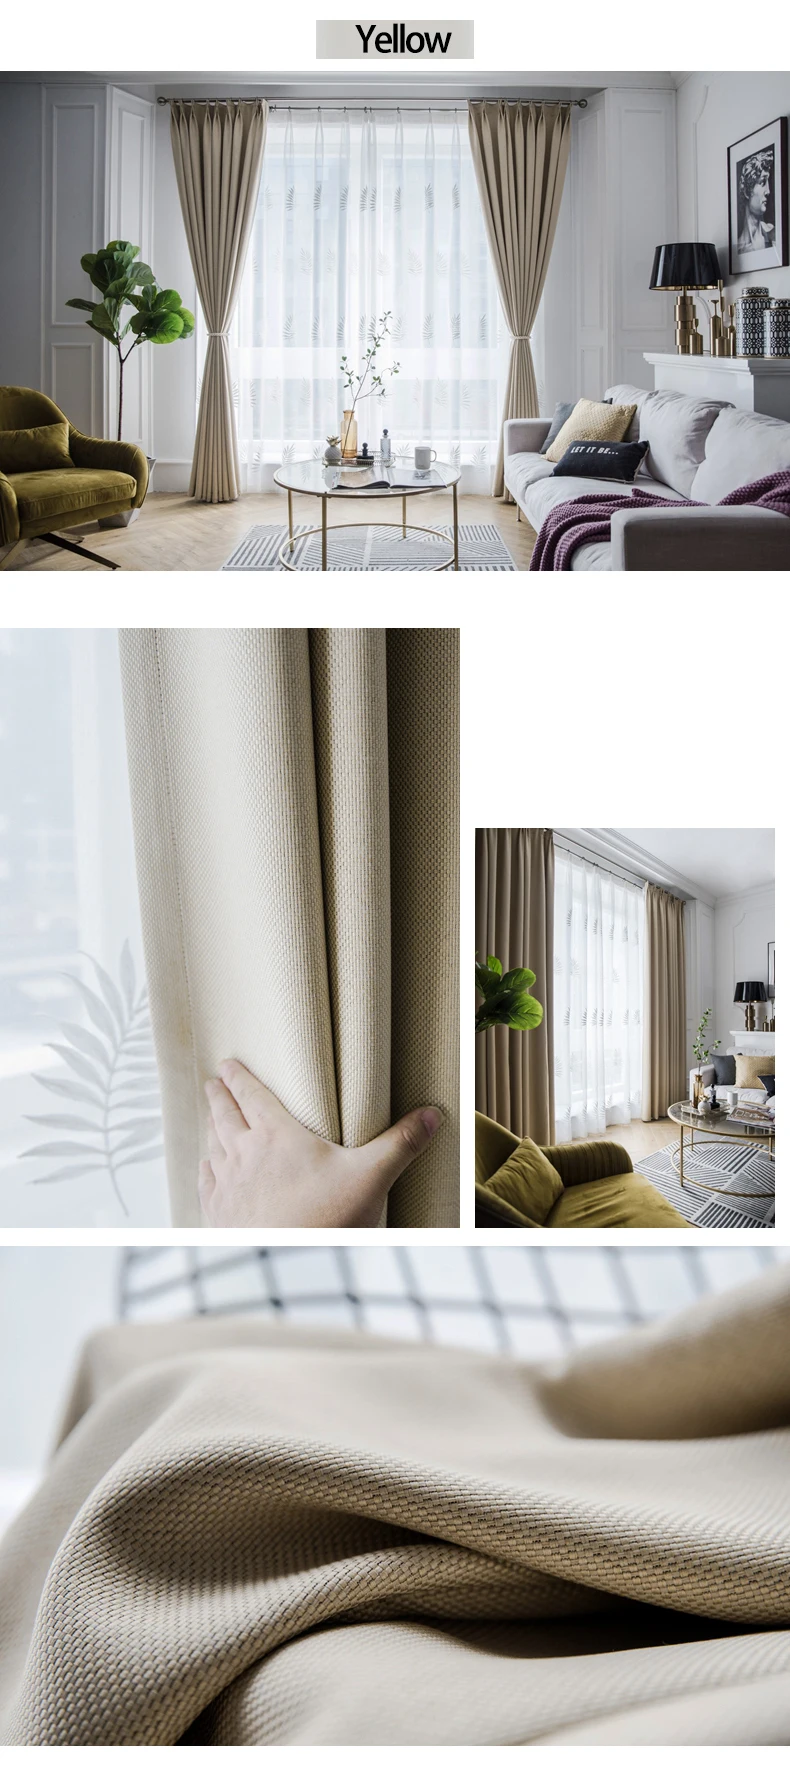 YCENTRE 80%, Затемненные занавески для гостиной, плотные занавески из искусственного льна, занавески для спальни Rideaux, на окно, индивидуальные, Cortina